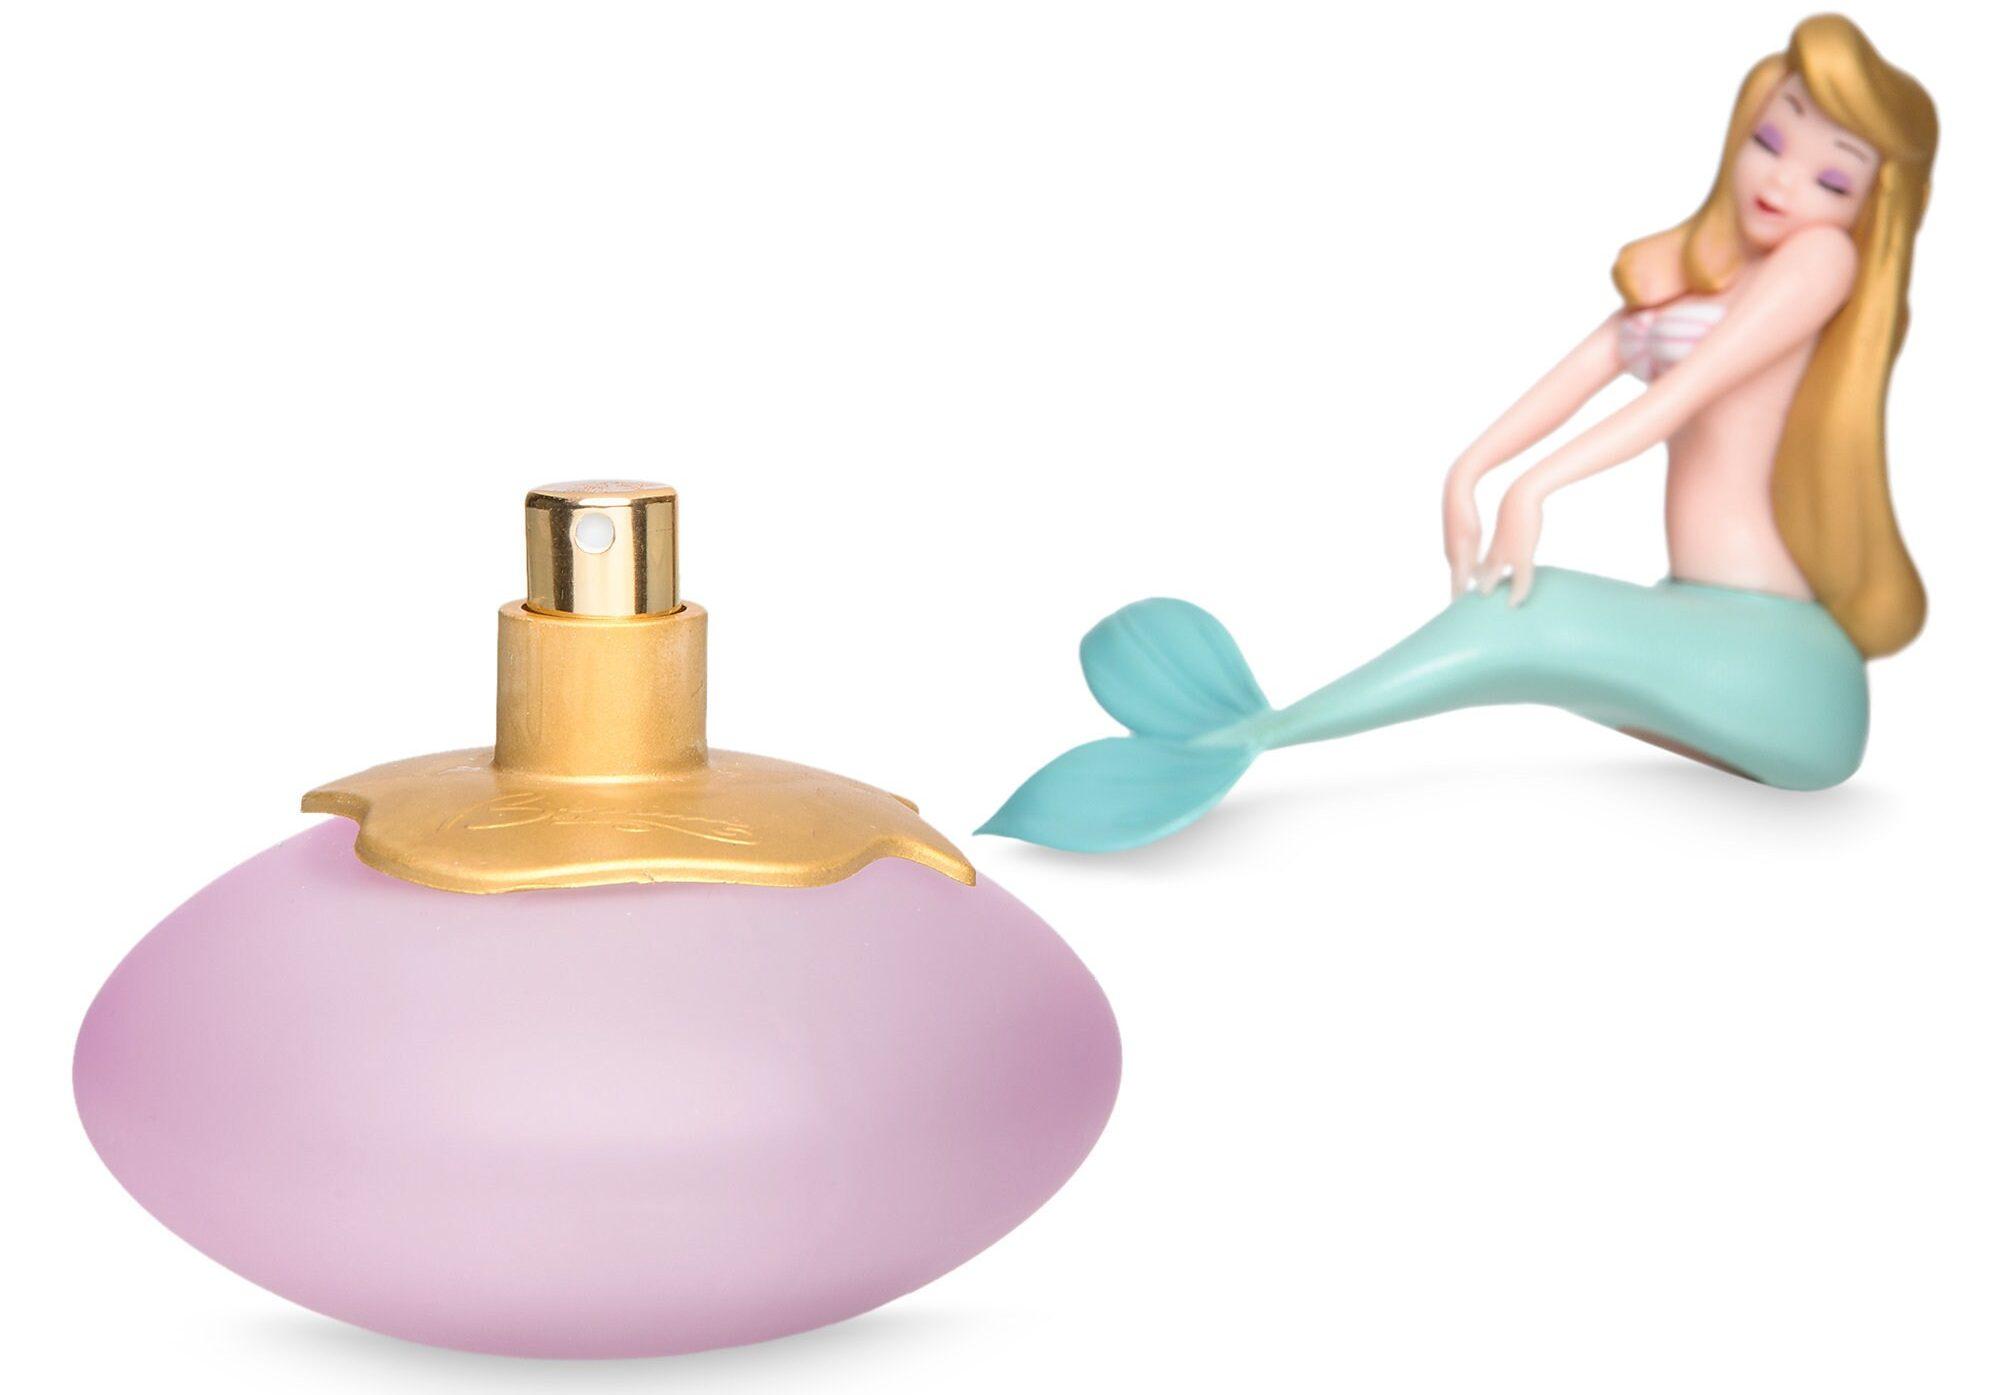 An Honest Review Of Besame’s Mermaid Lagoon Perfume